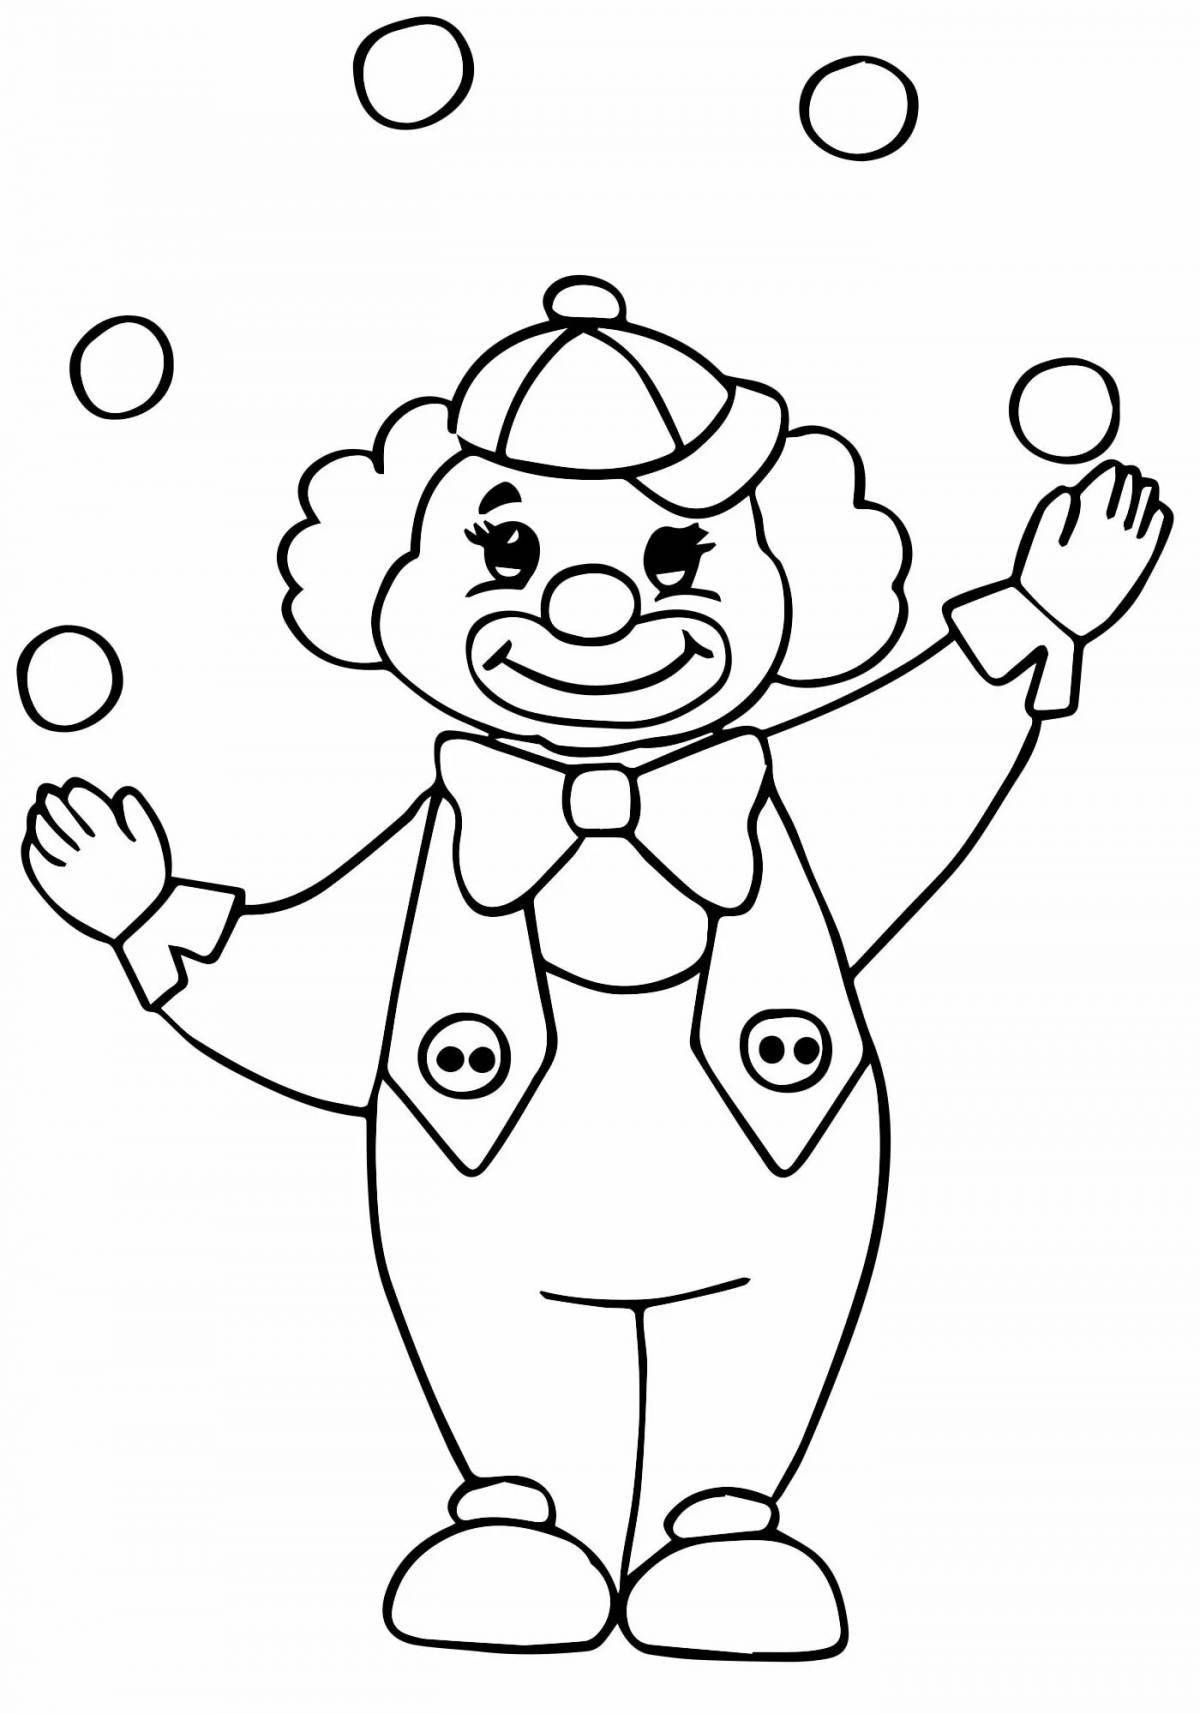 Живой клоун-раскраска для детей 6-7 лет